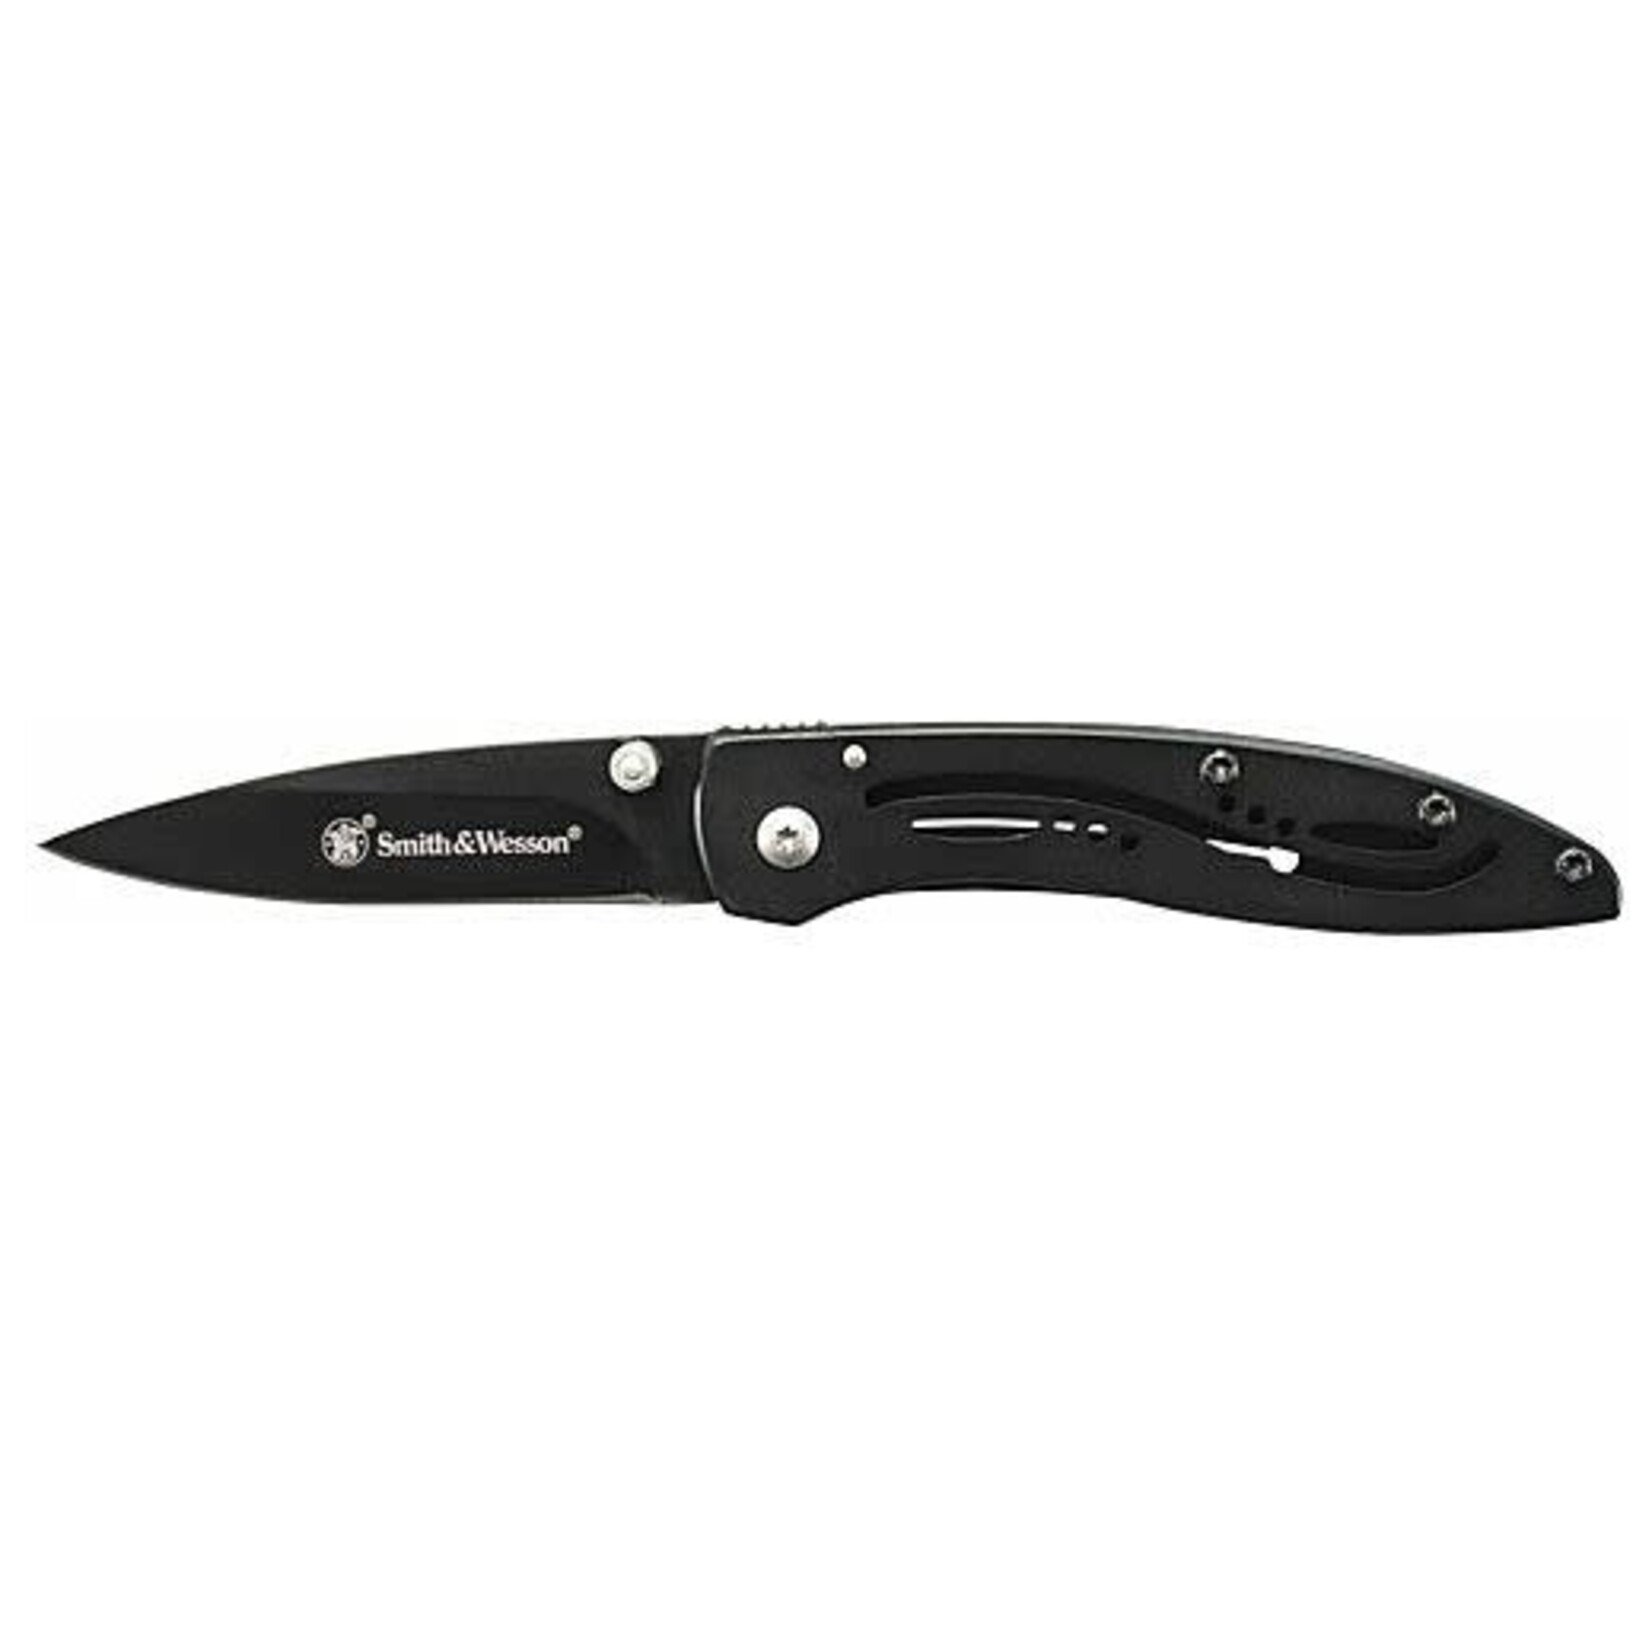 S&W S&W KNIFE BLACK BLADE 3" BLADE